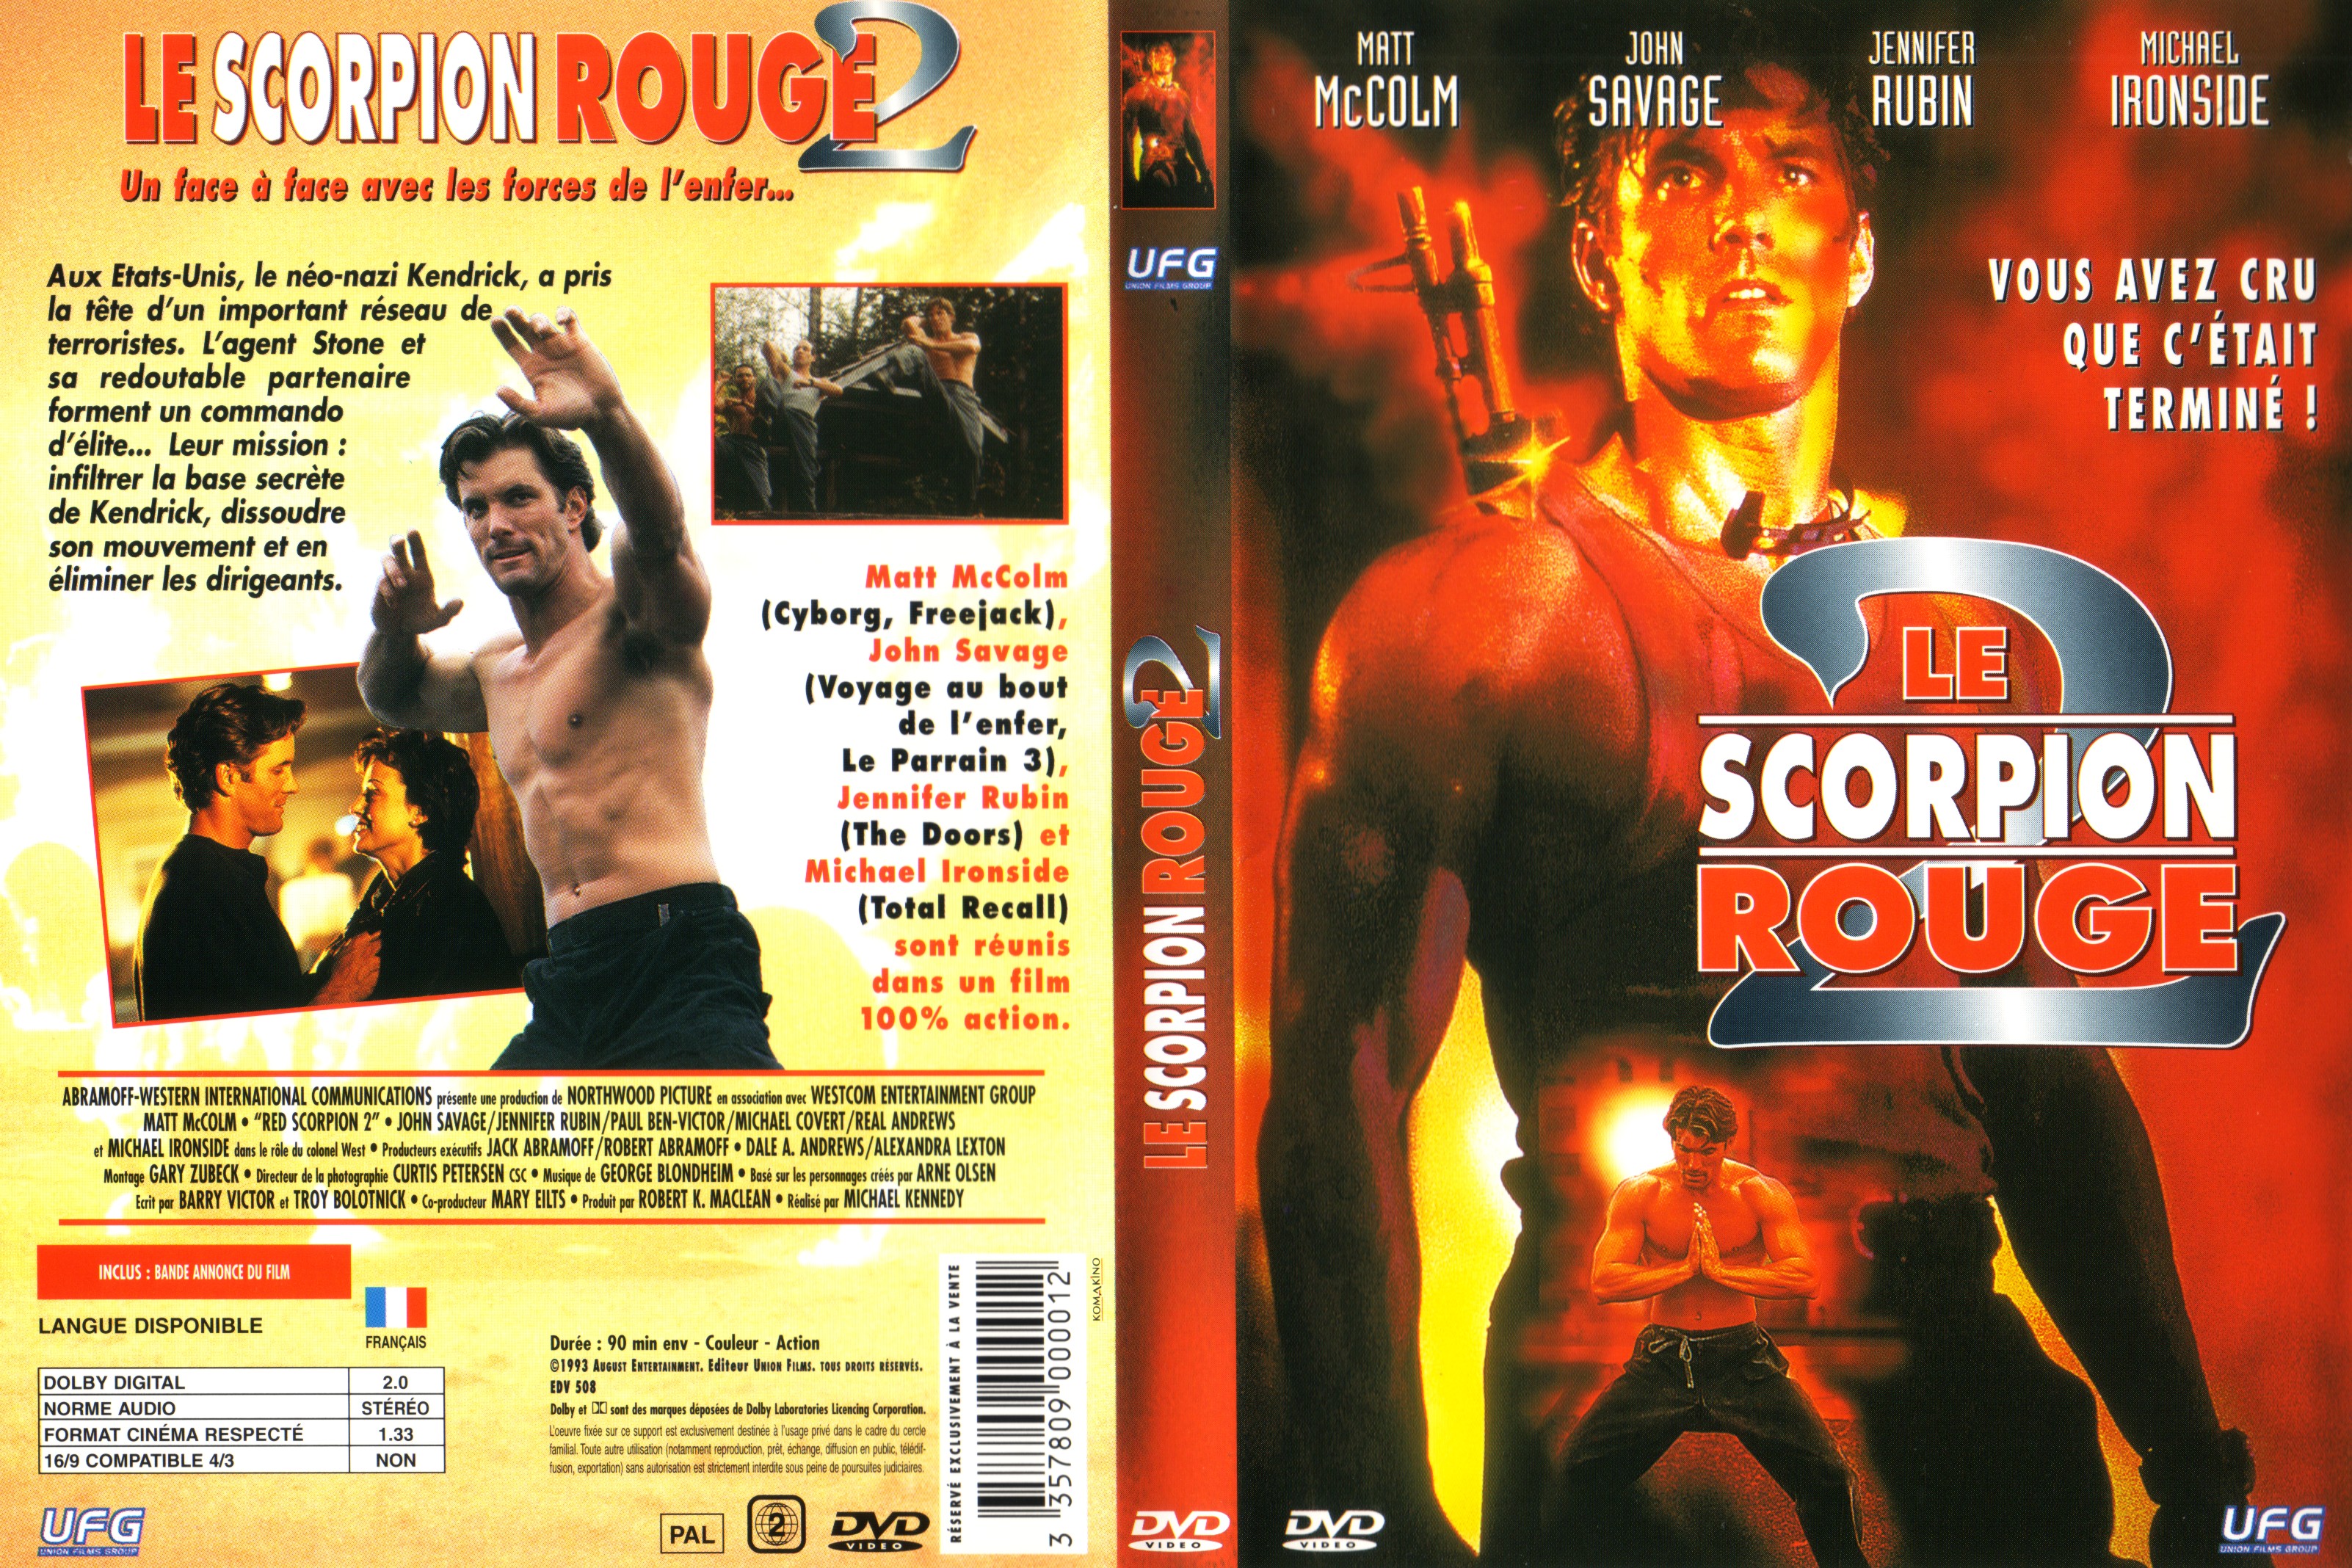 Jaquette DVD Le scorpion rouge 2